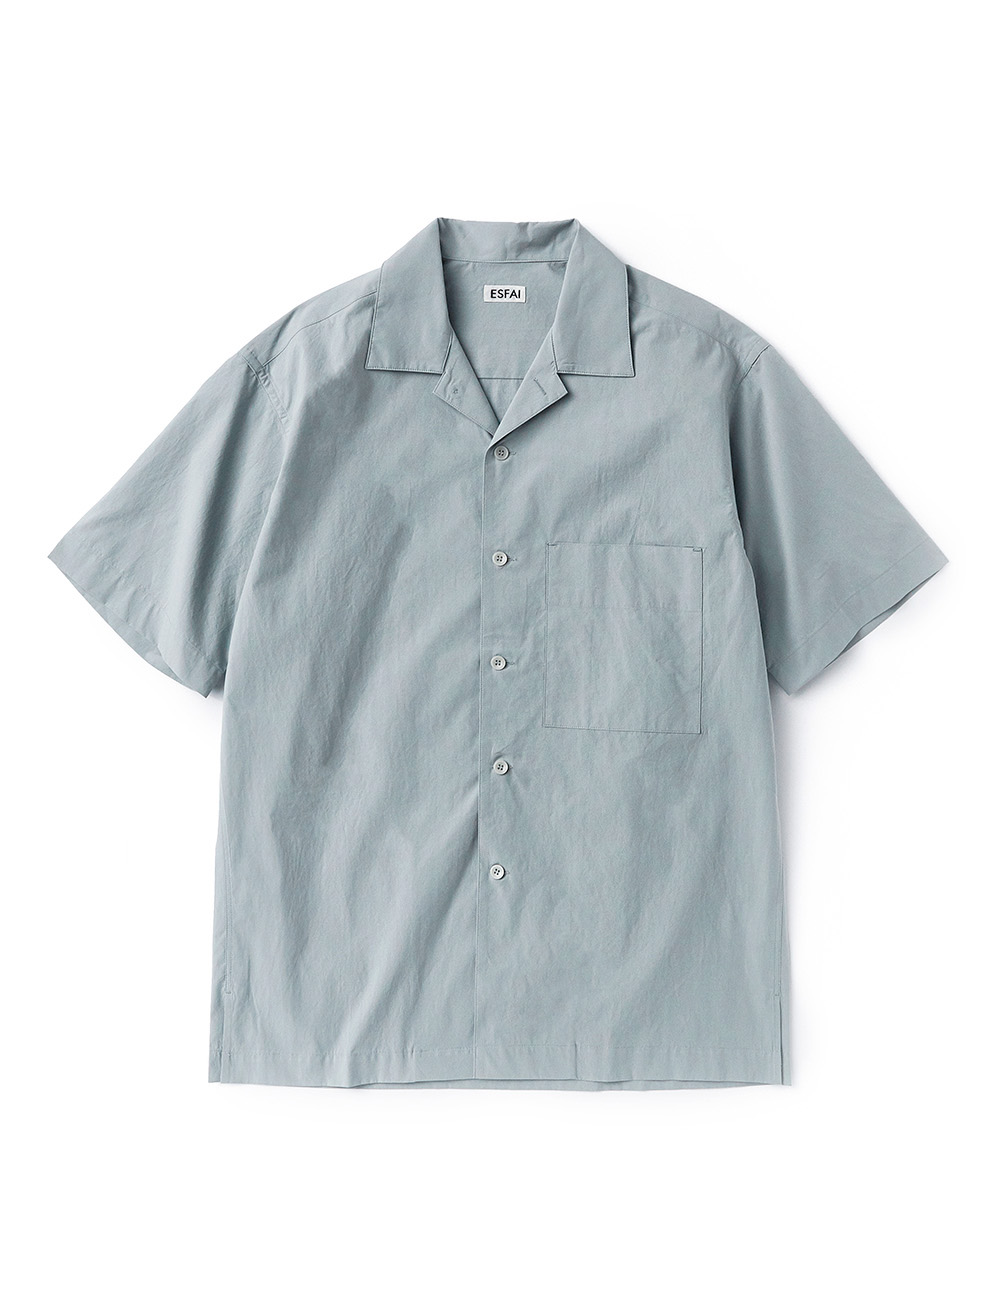 [ESFAI] sue02 summer standard shirts (Blue Gray)